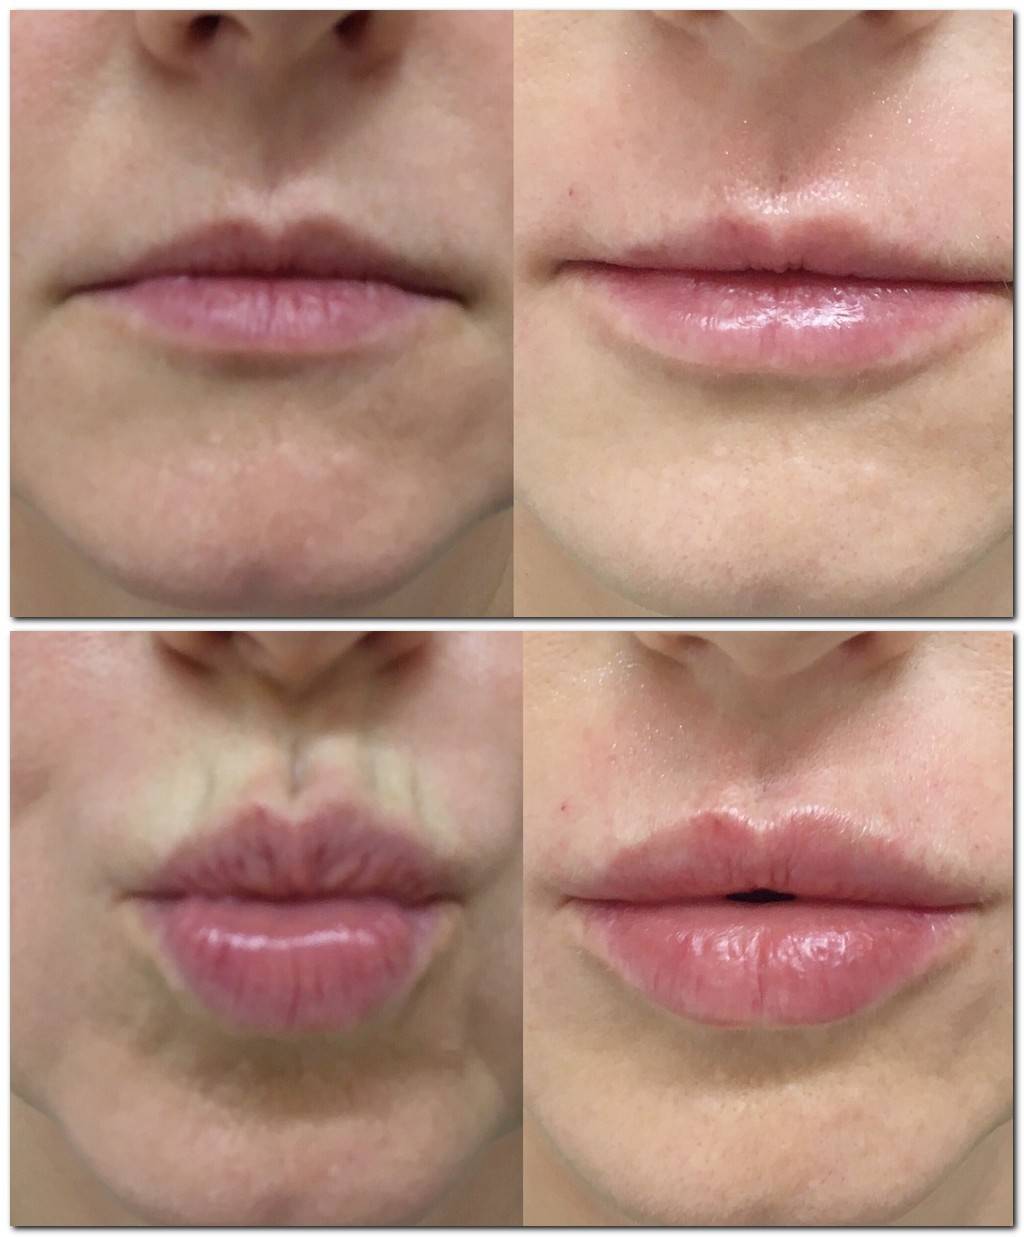 Филлер для увеличения губ: как проходит процедура, фото до и после